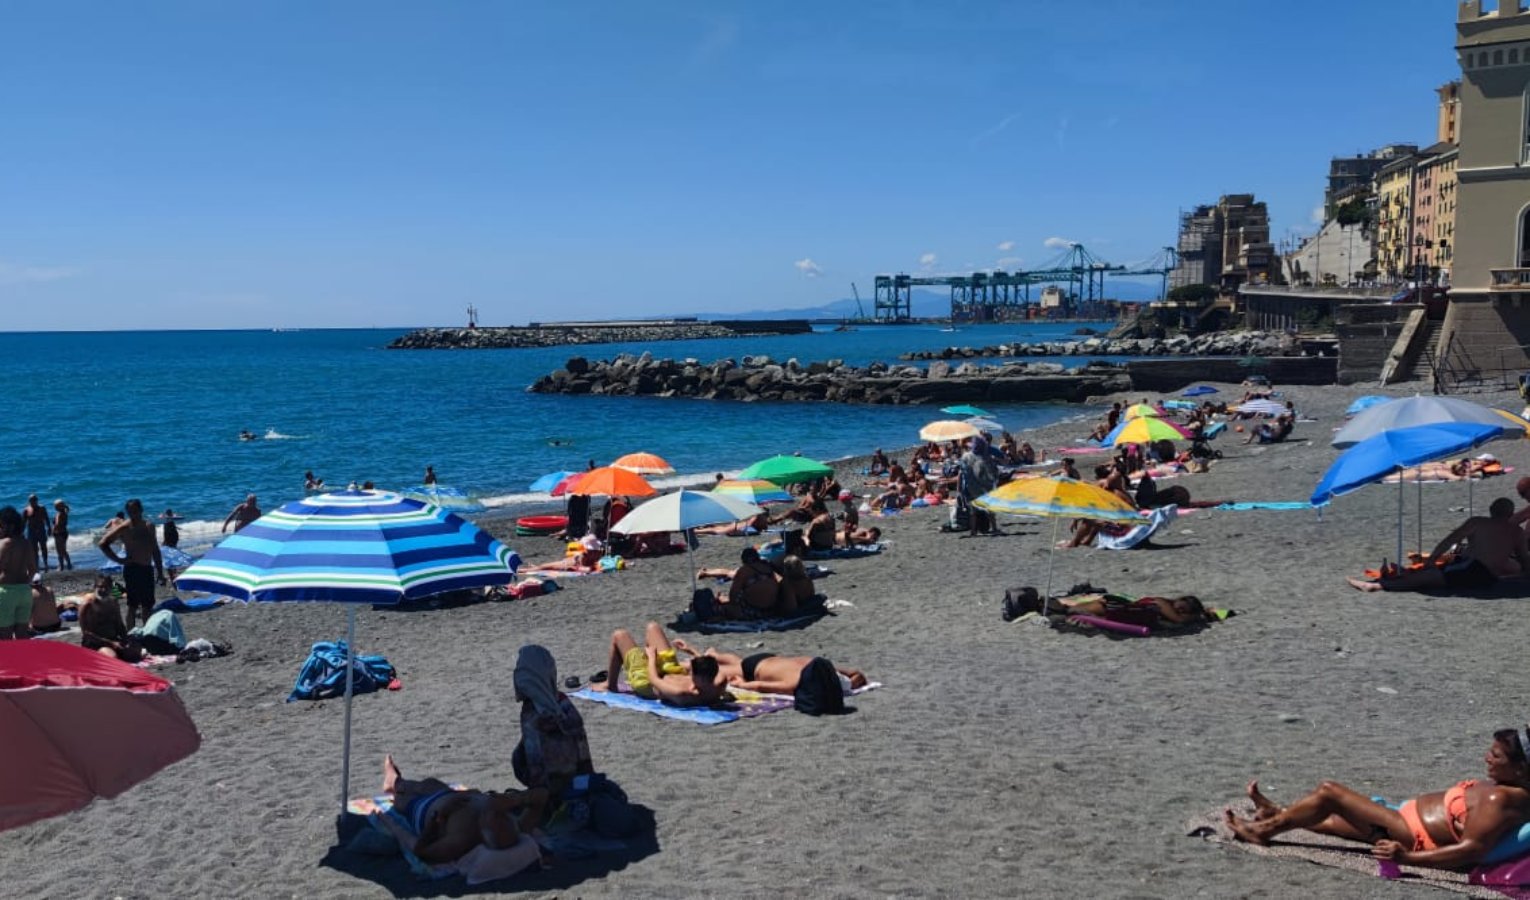 Viaggio fra le spiagge della Liguria, i turisti: 